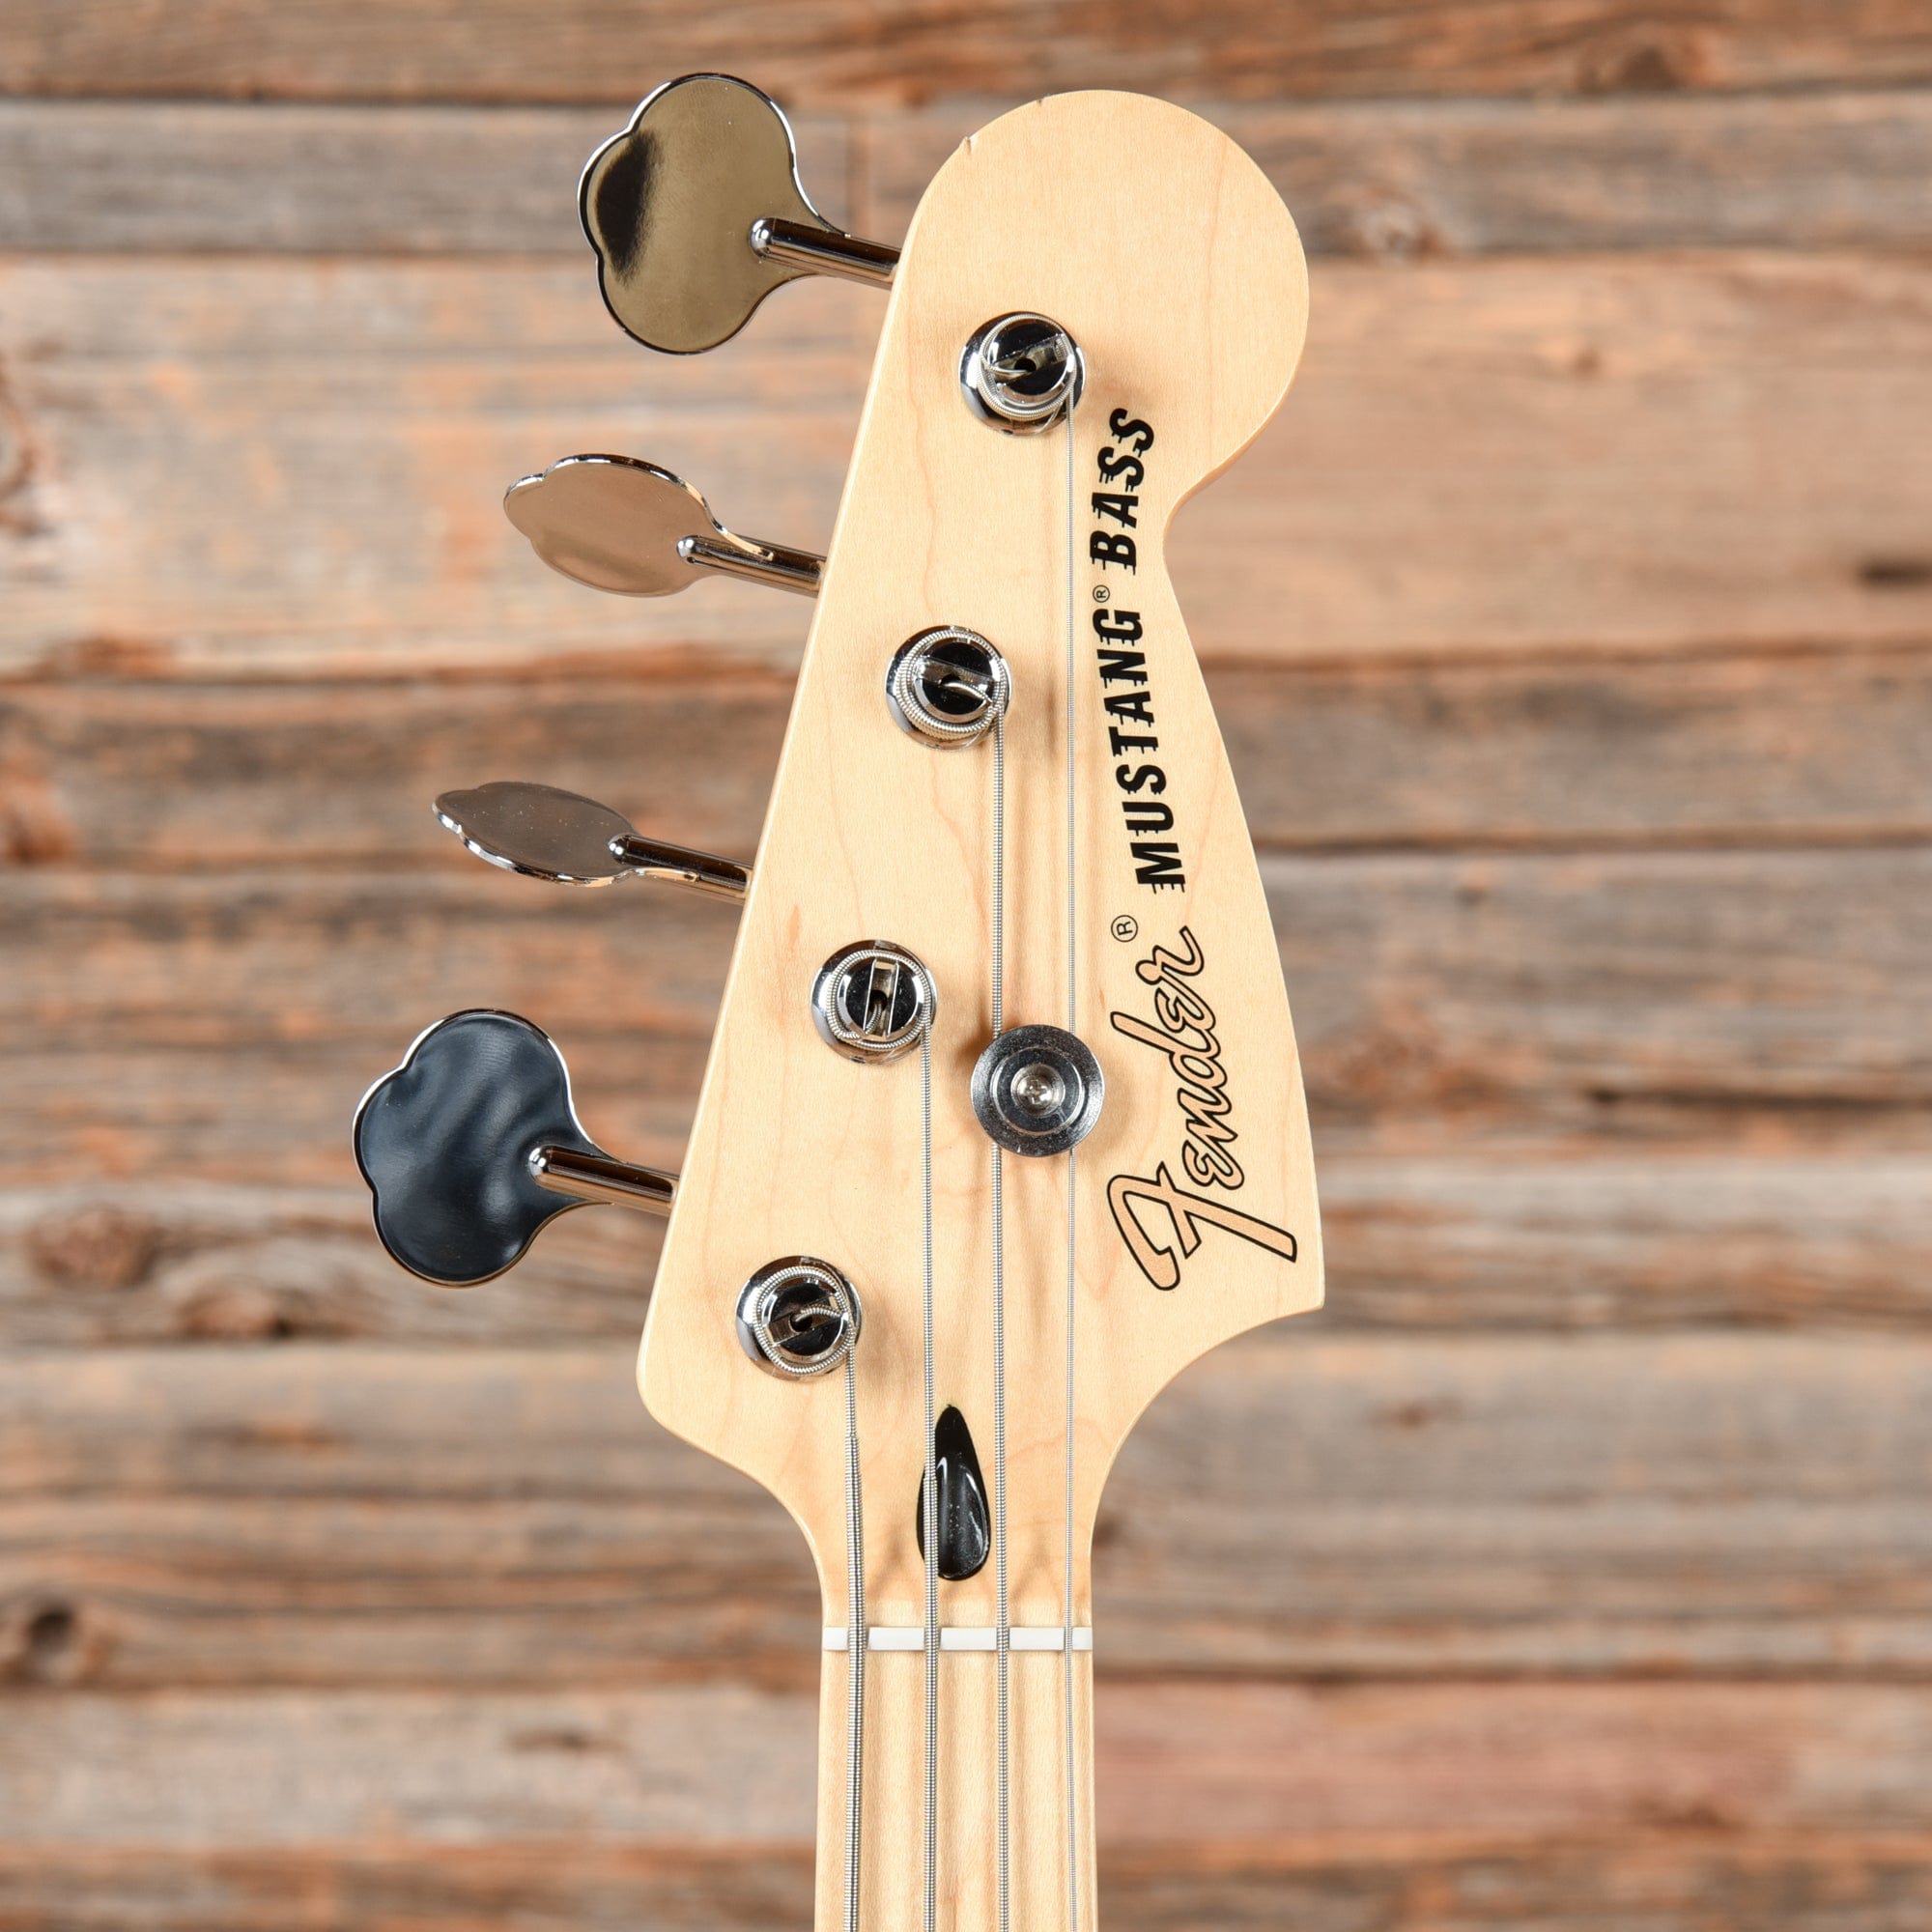 Fender Player Mustang PJ Bass Butterscotch Blonde 2021 Bass Guitars / 4-String